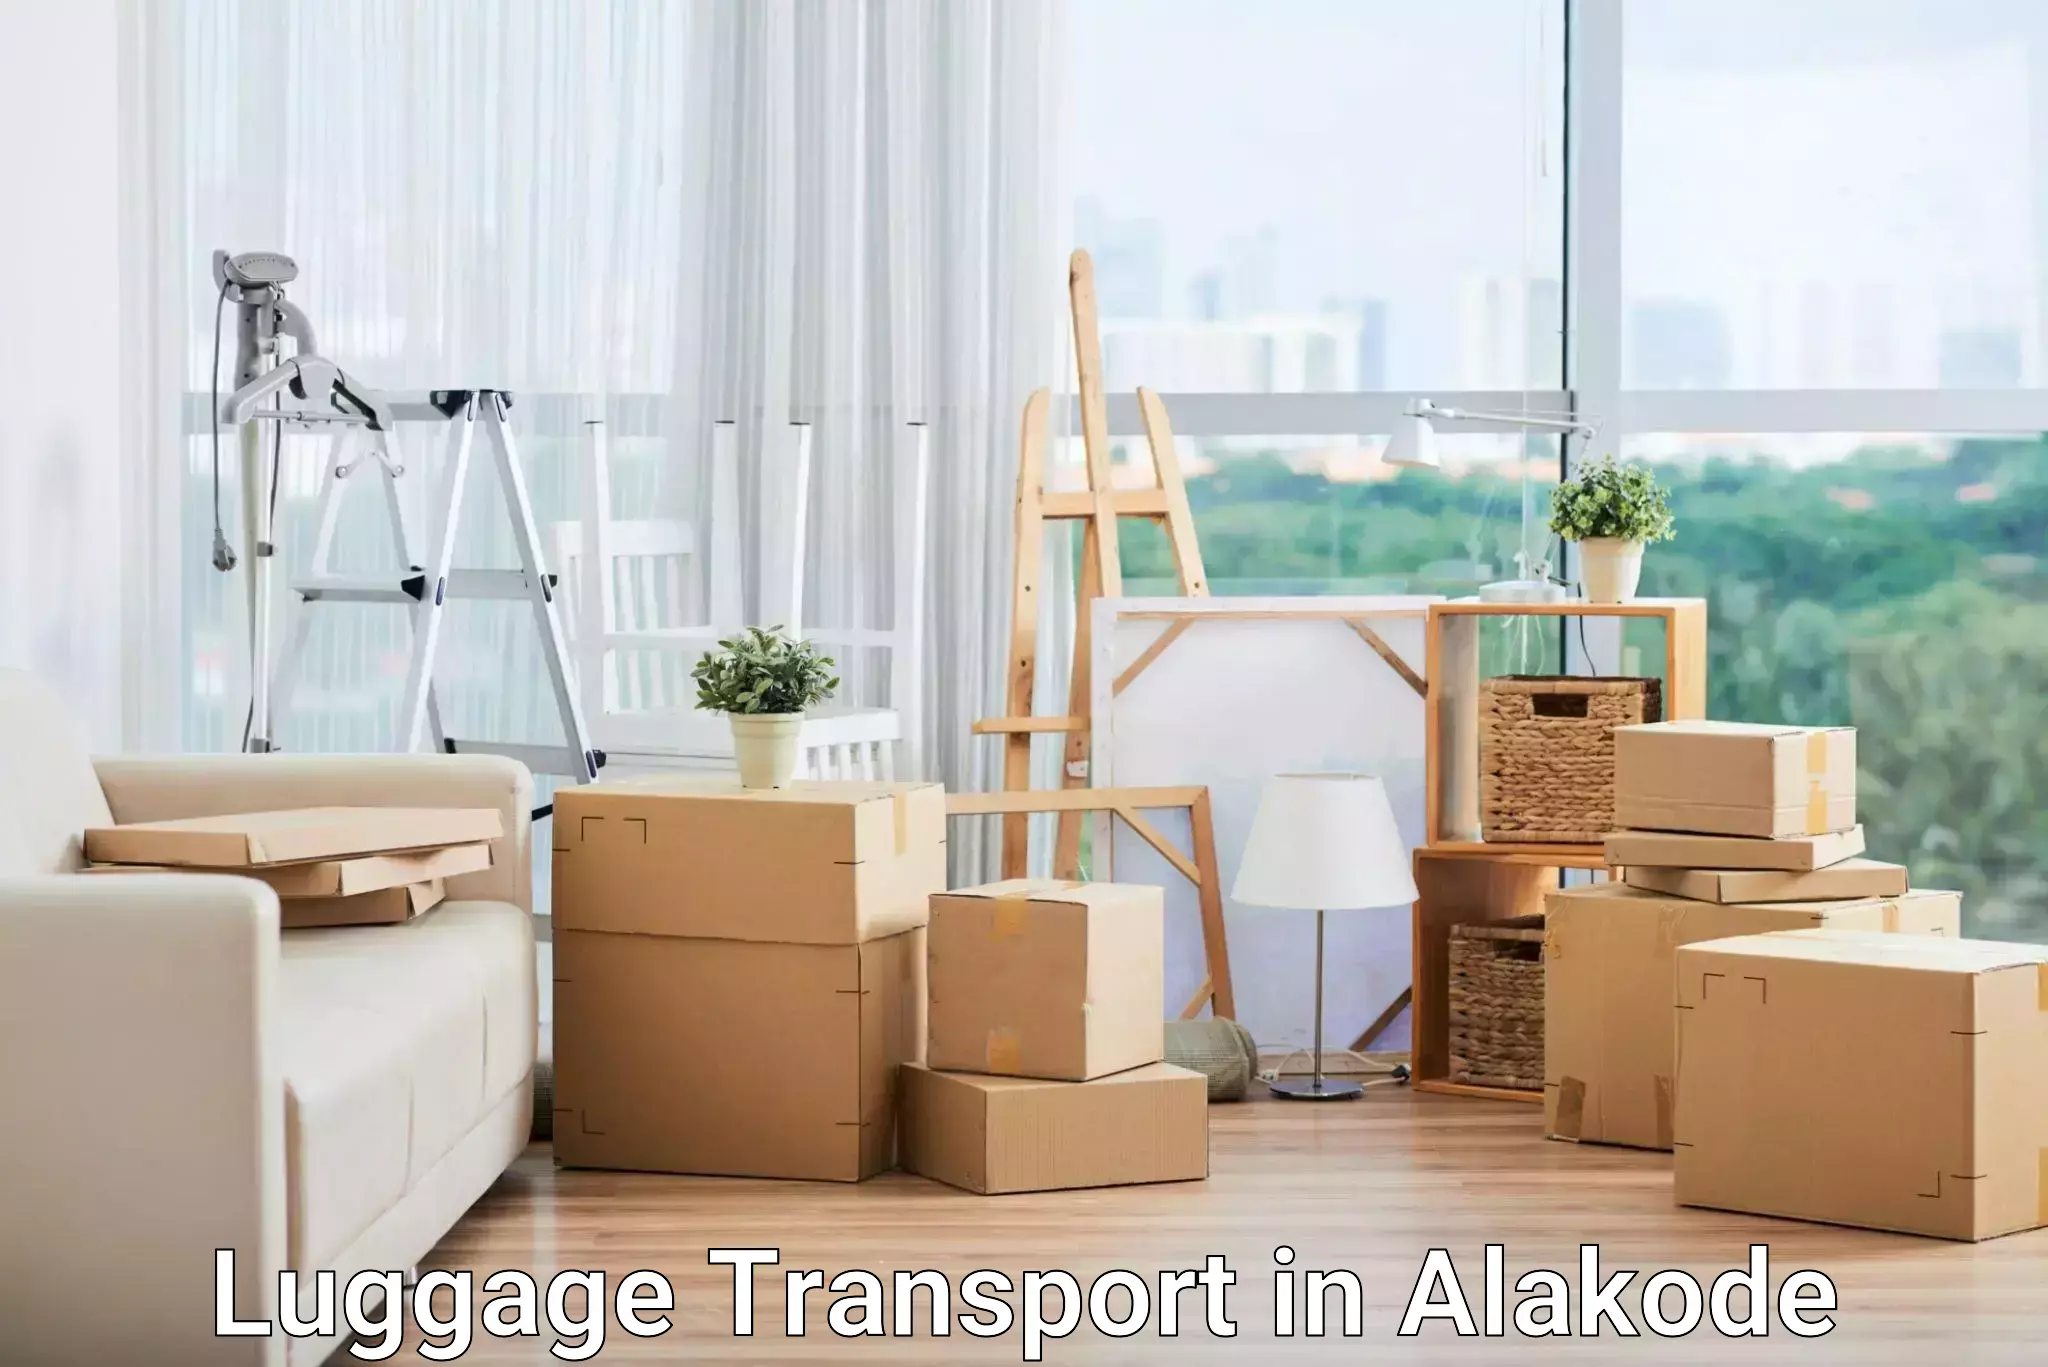 Baggage transport management in Alakode